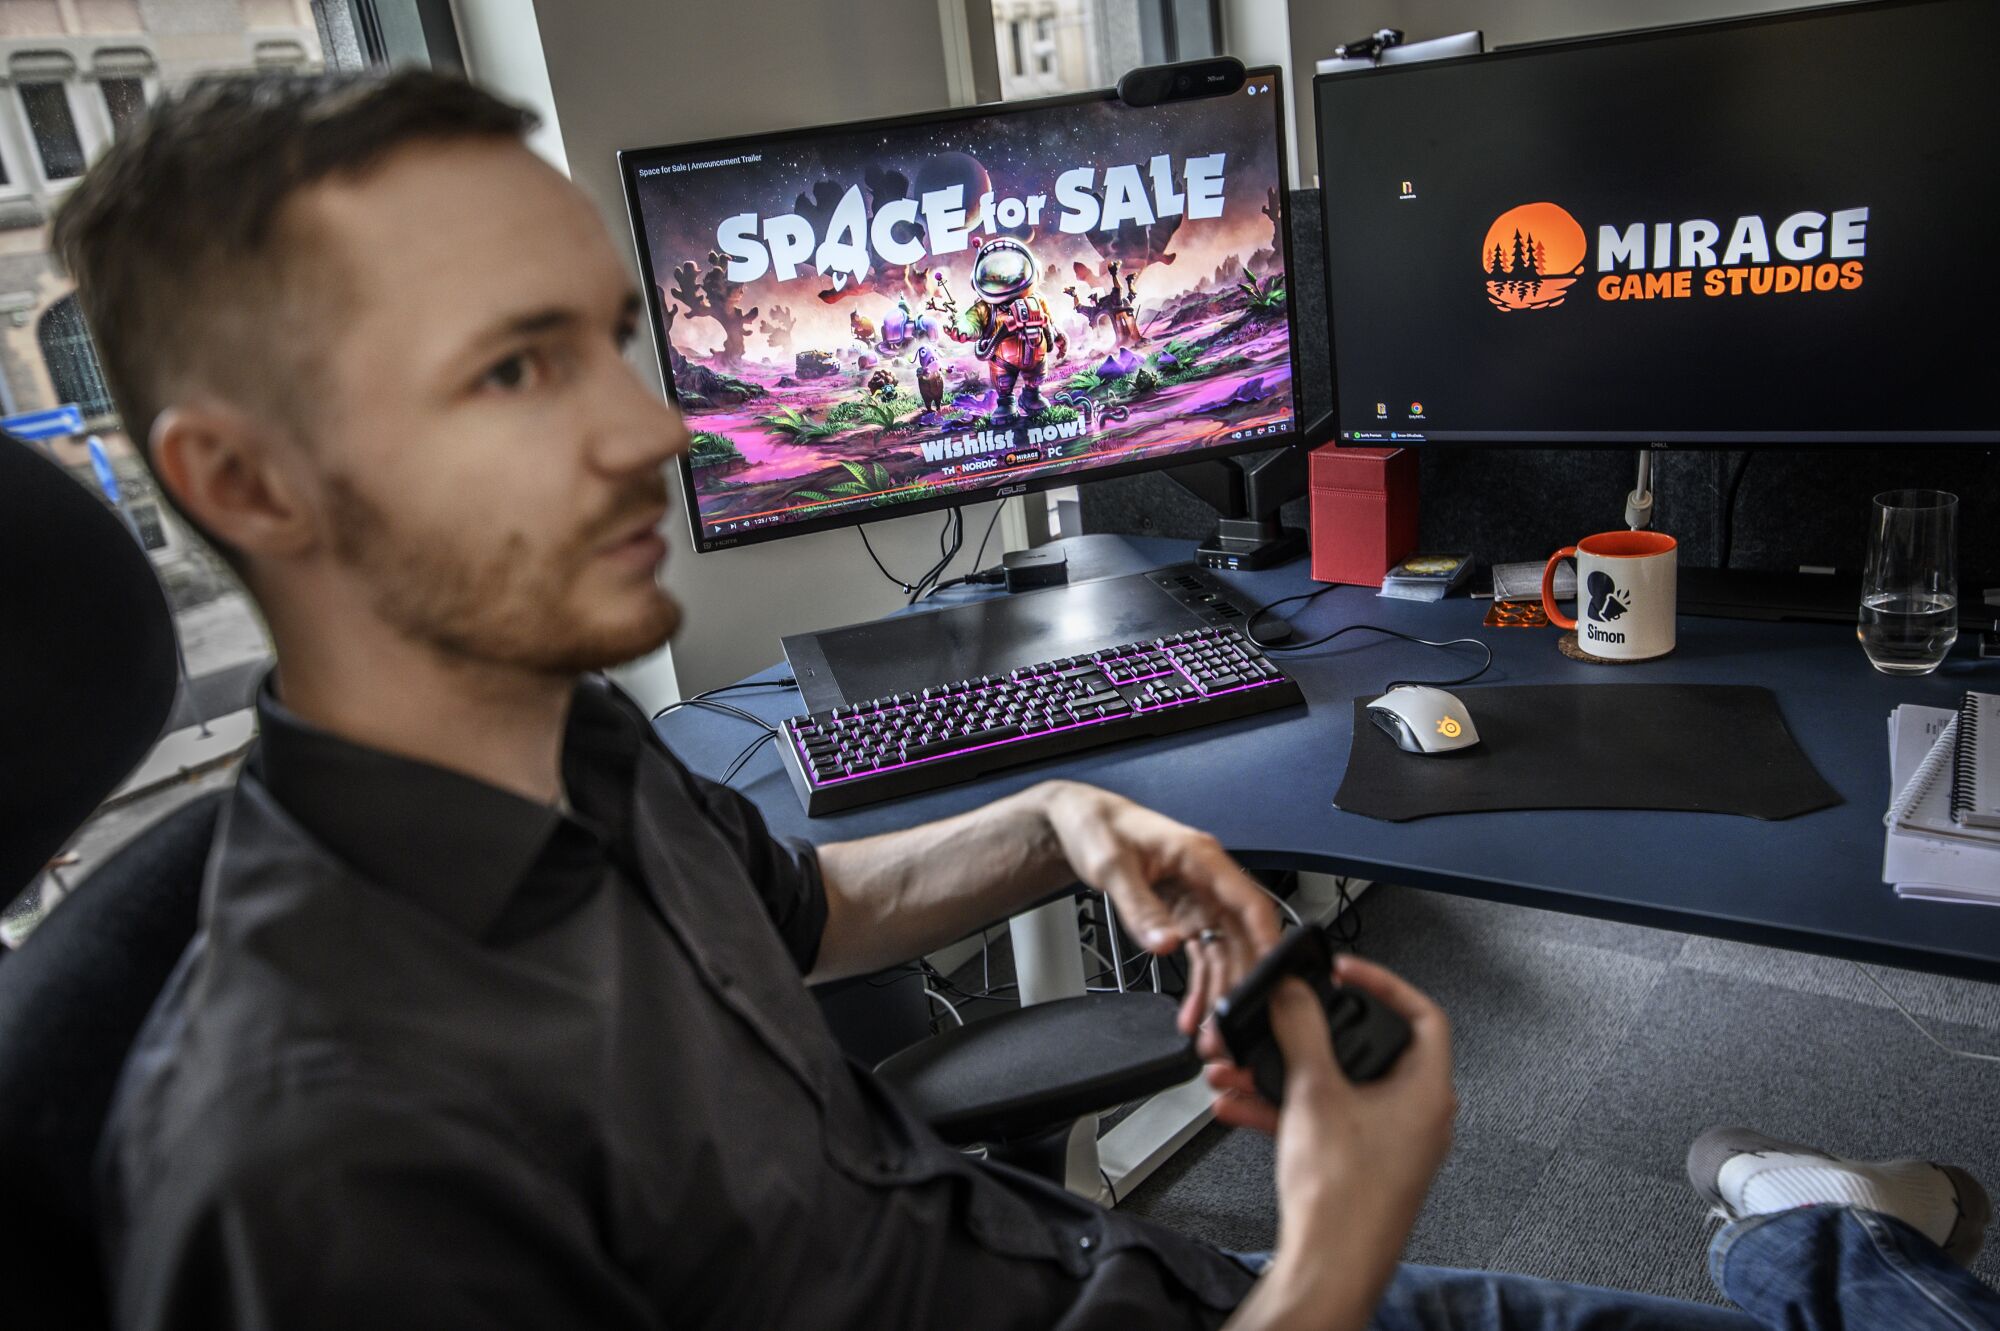 مردی با پیراهن تیره پشت میز با دو صفحه کامپیوتر نشسته است.  یکی می گوید Space for Sale و دیگری Mirage Game Studios